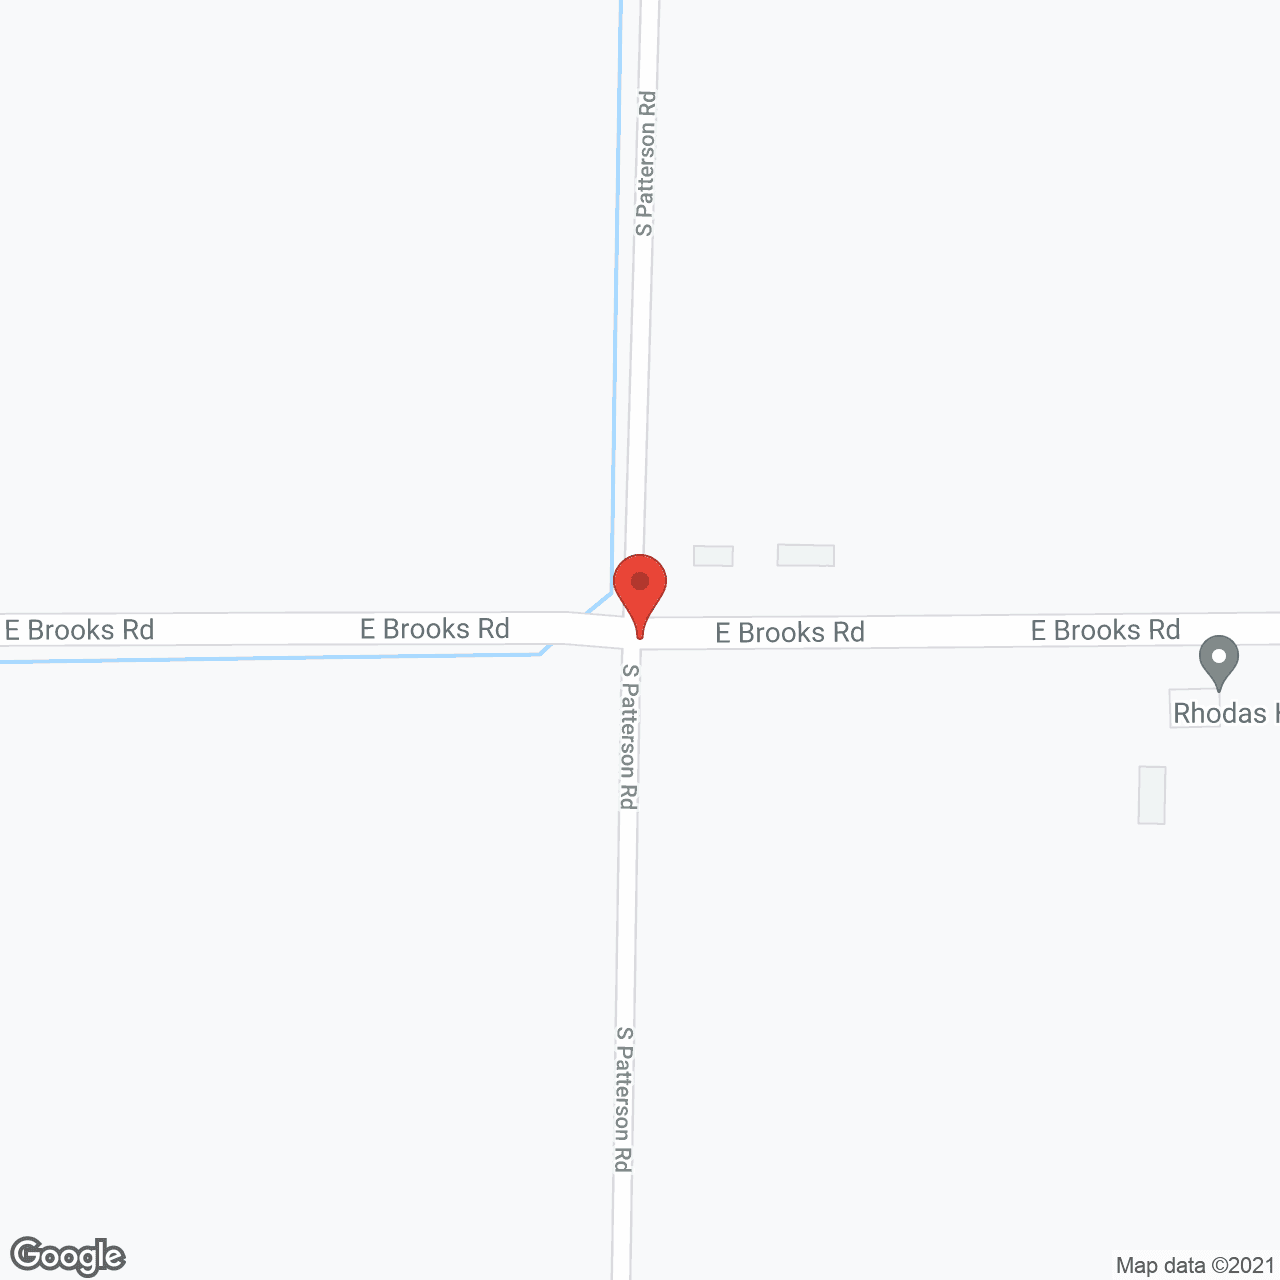 Rhoda's House in google map